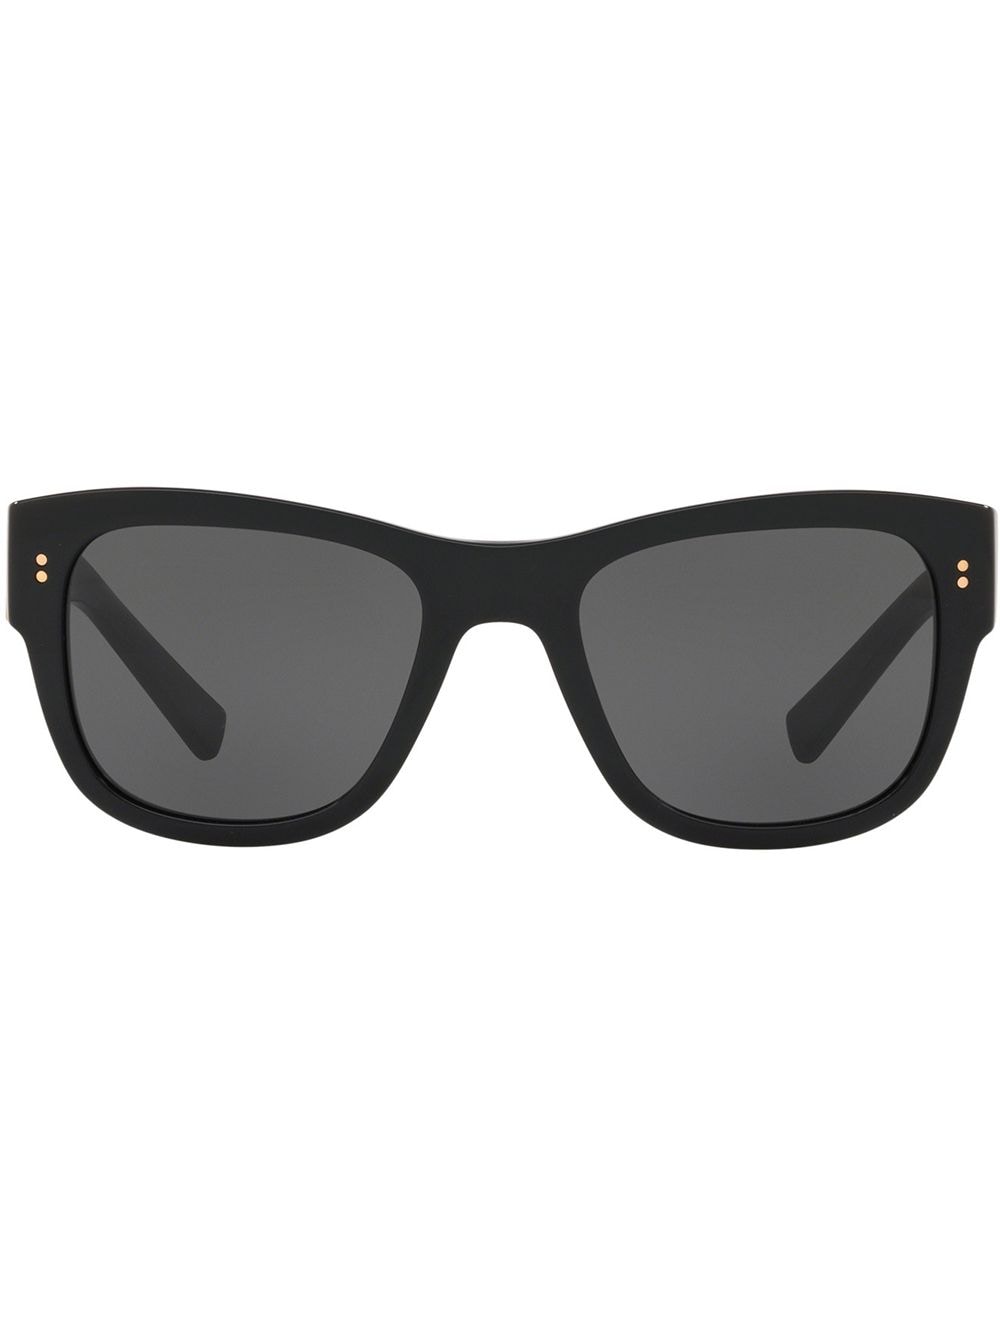 фото Dolce & gabbana eyewear солнцезащитные очки domenico в квадратной оправе